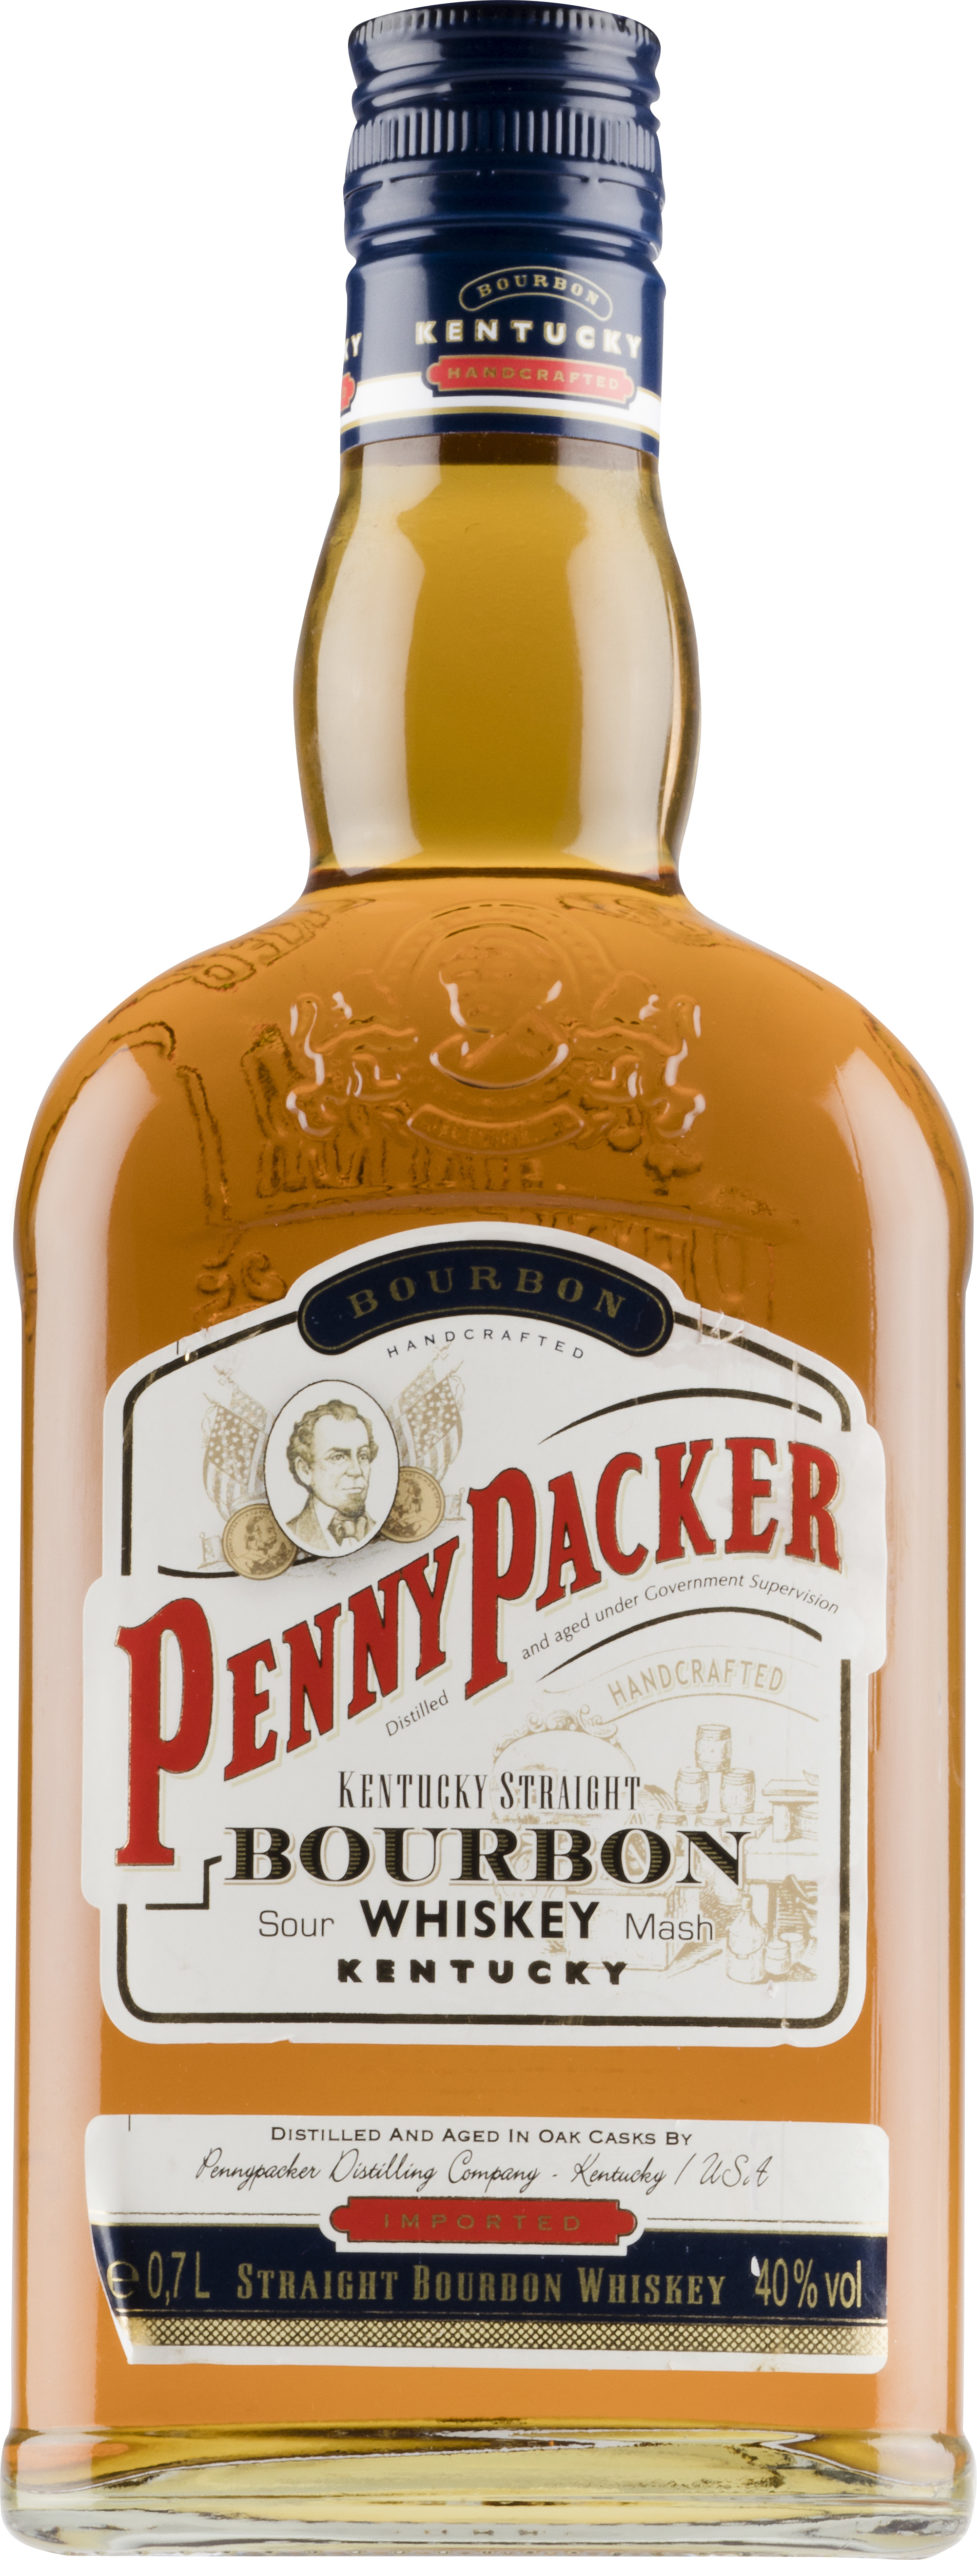 Penny Packer Bourbon Whiskey